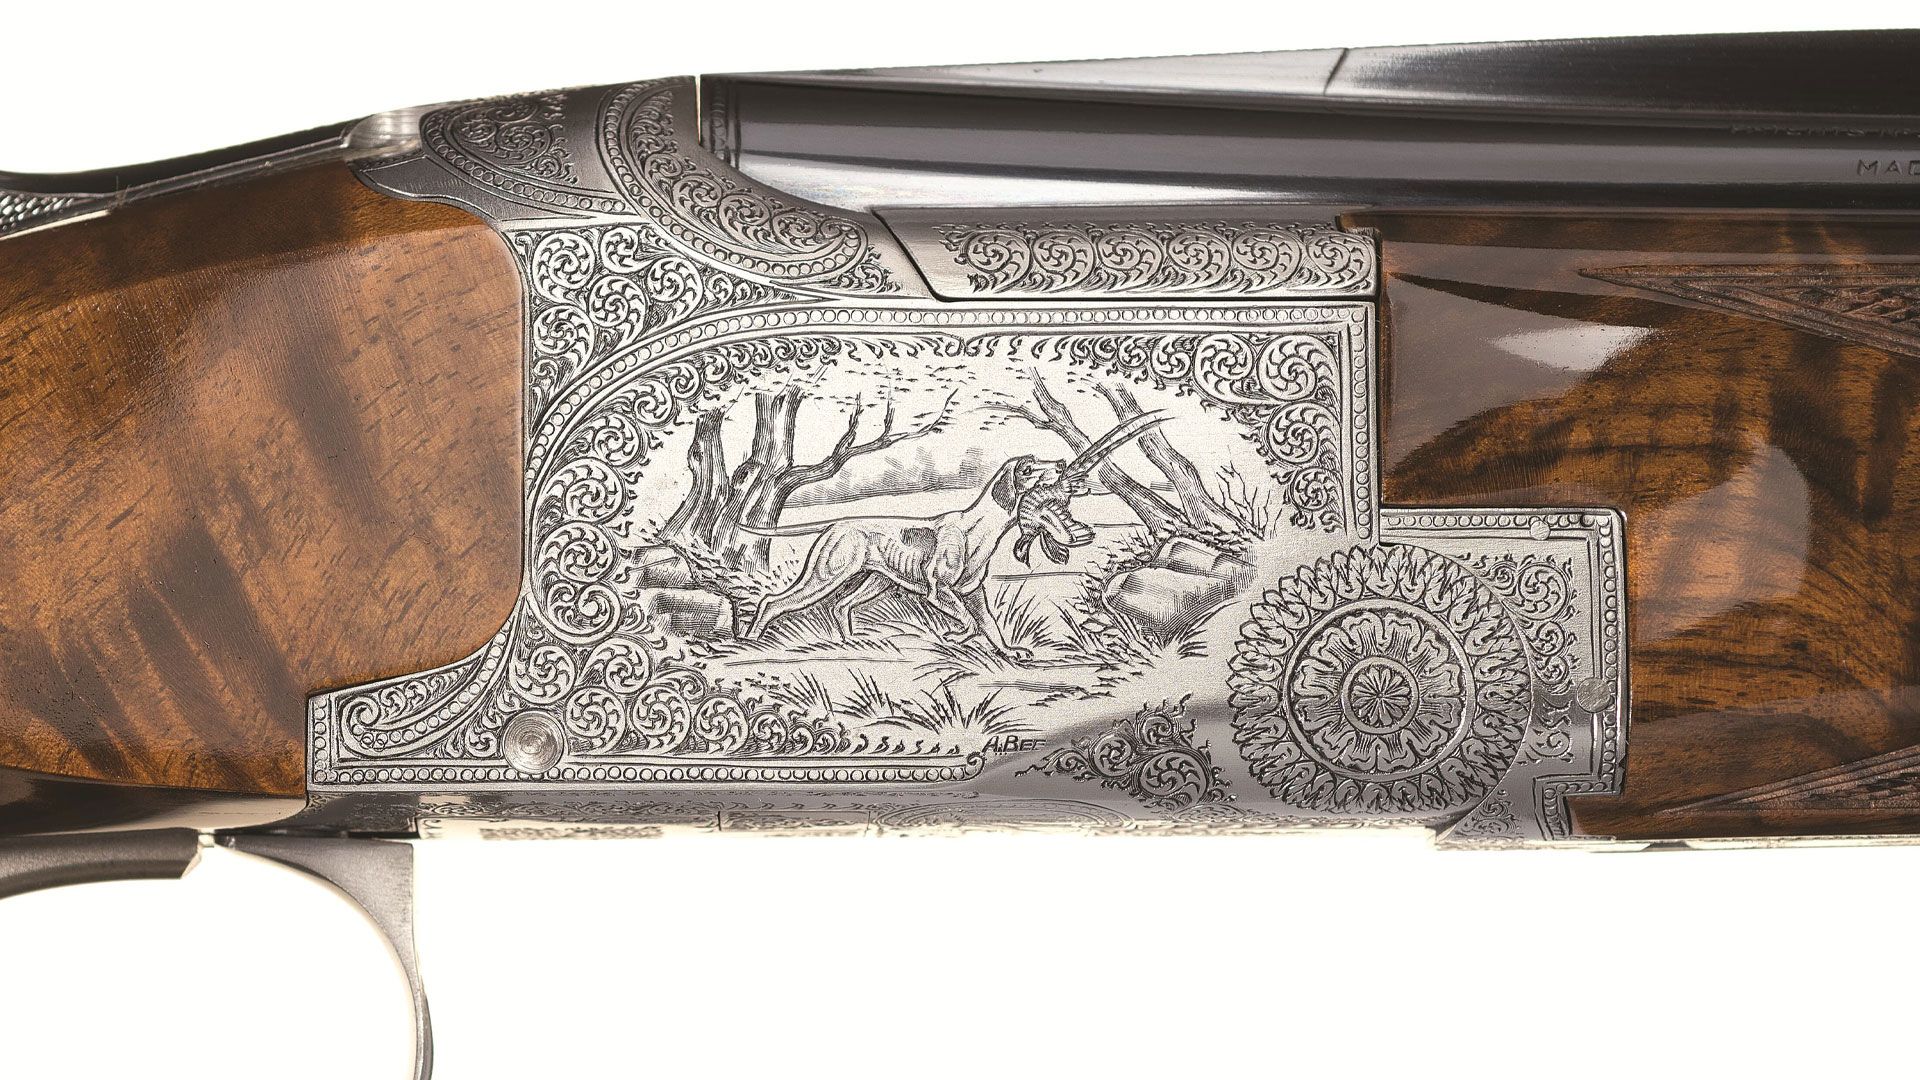 pointer-grade-browning-28-gauge-shotgun-engraving-closeup